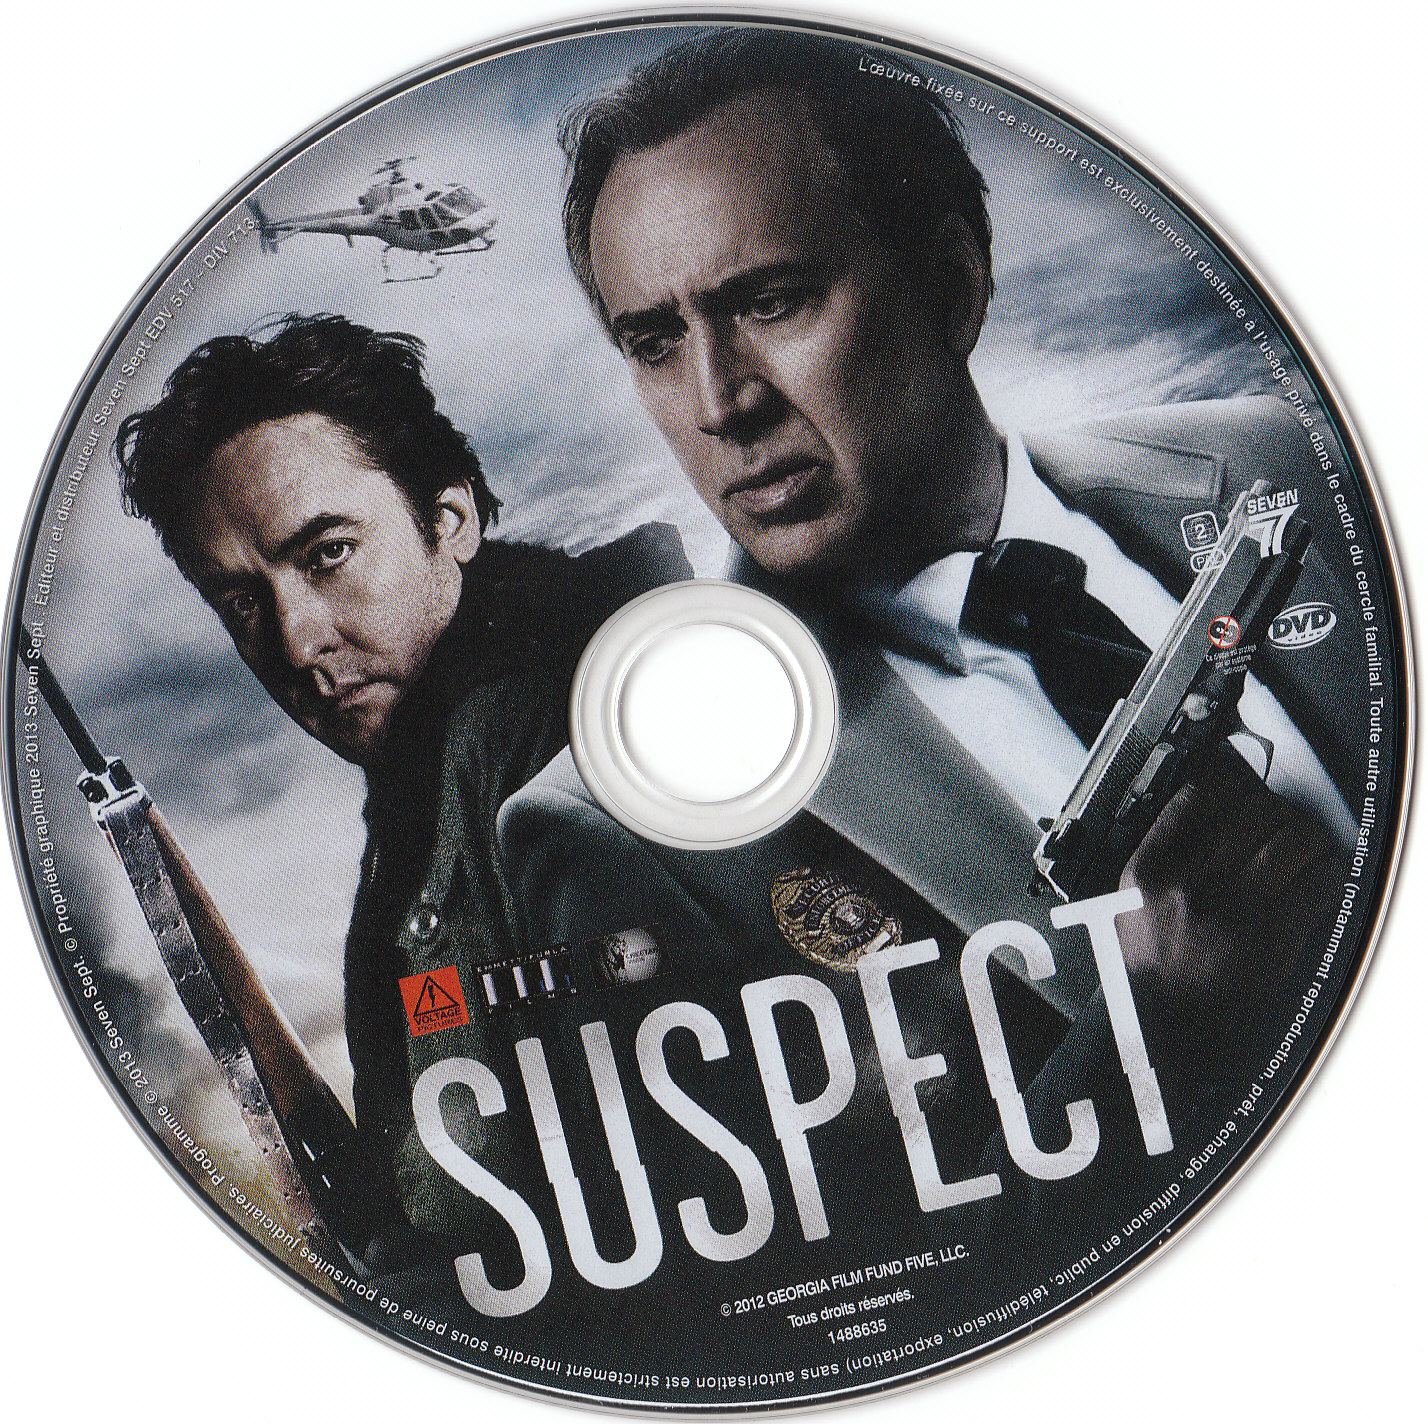 Suspect (2013)